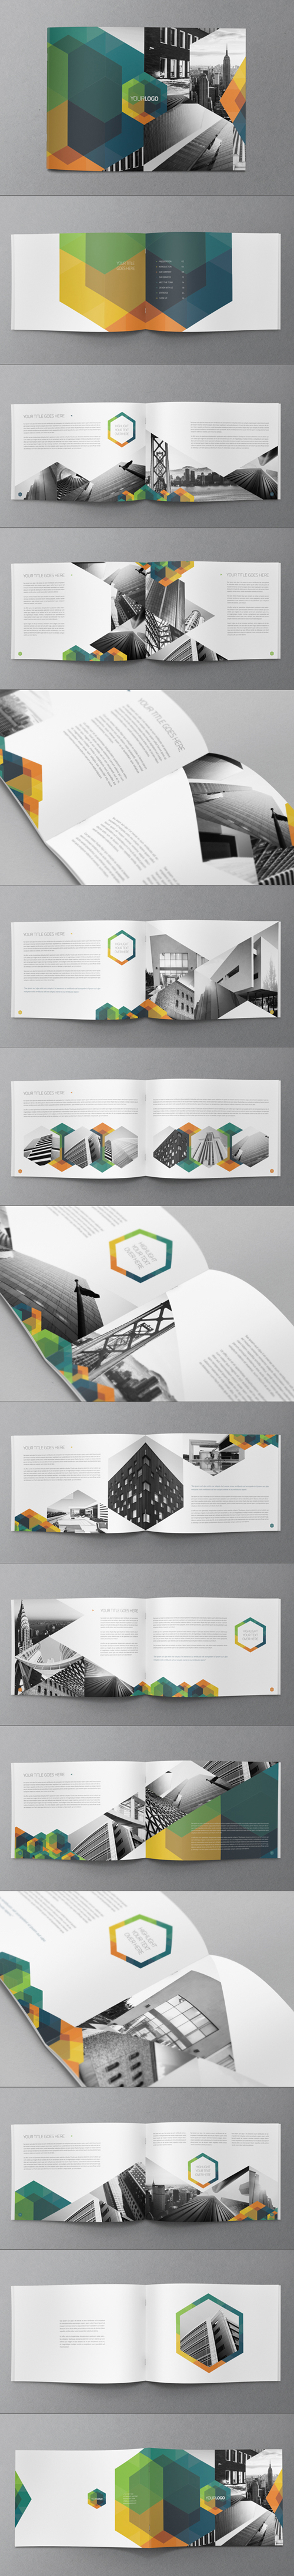 Hexo Brochure Design